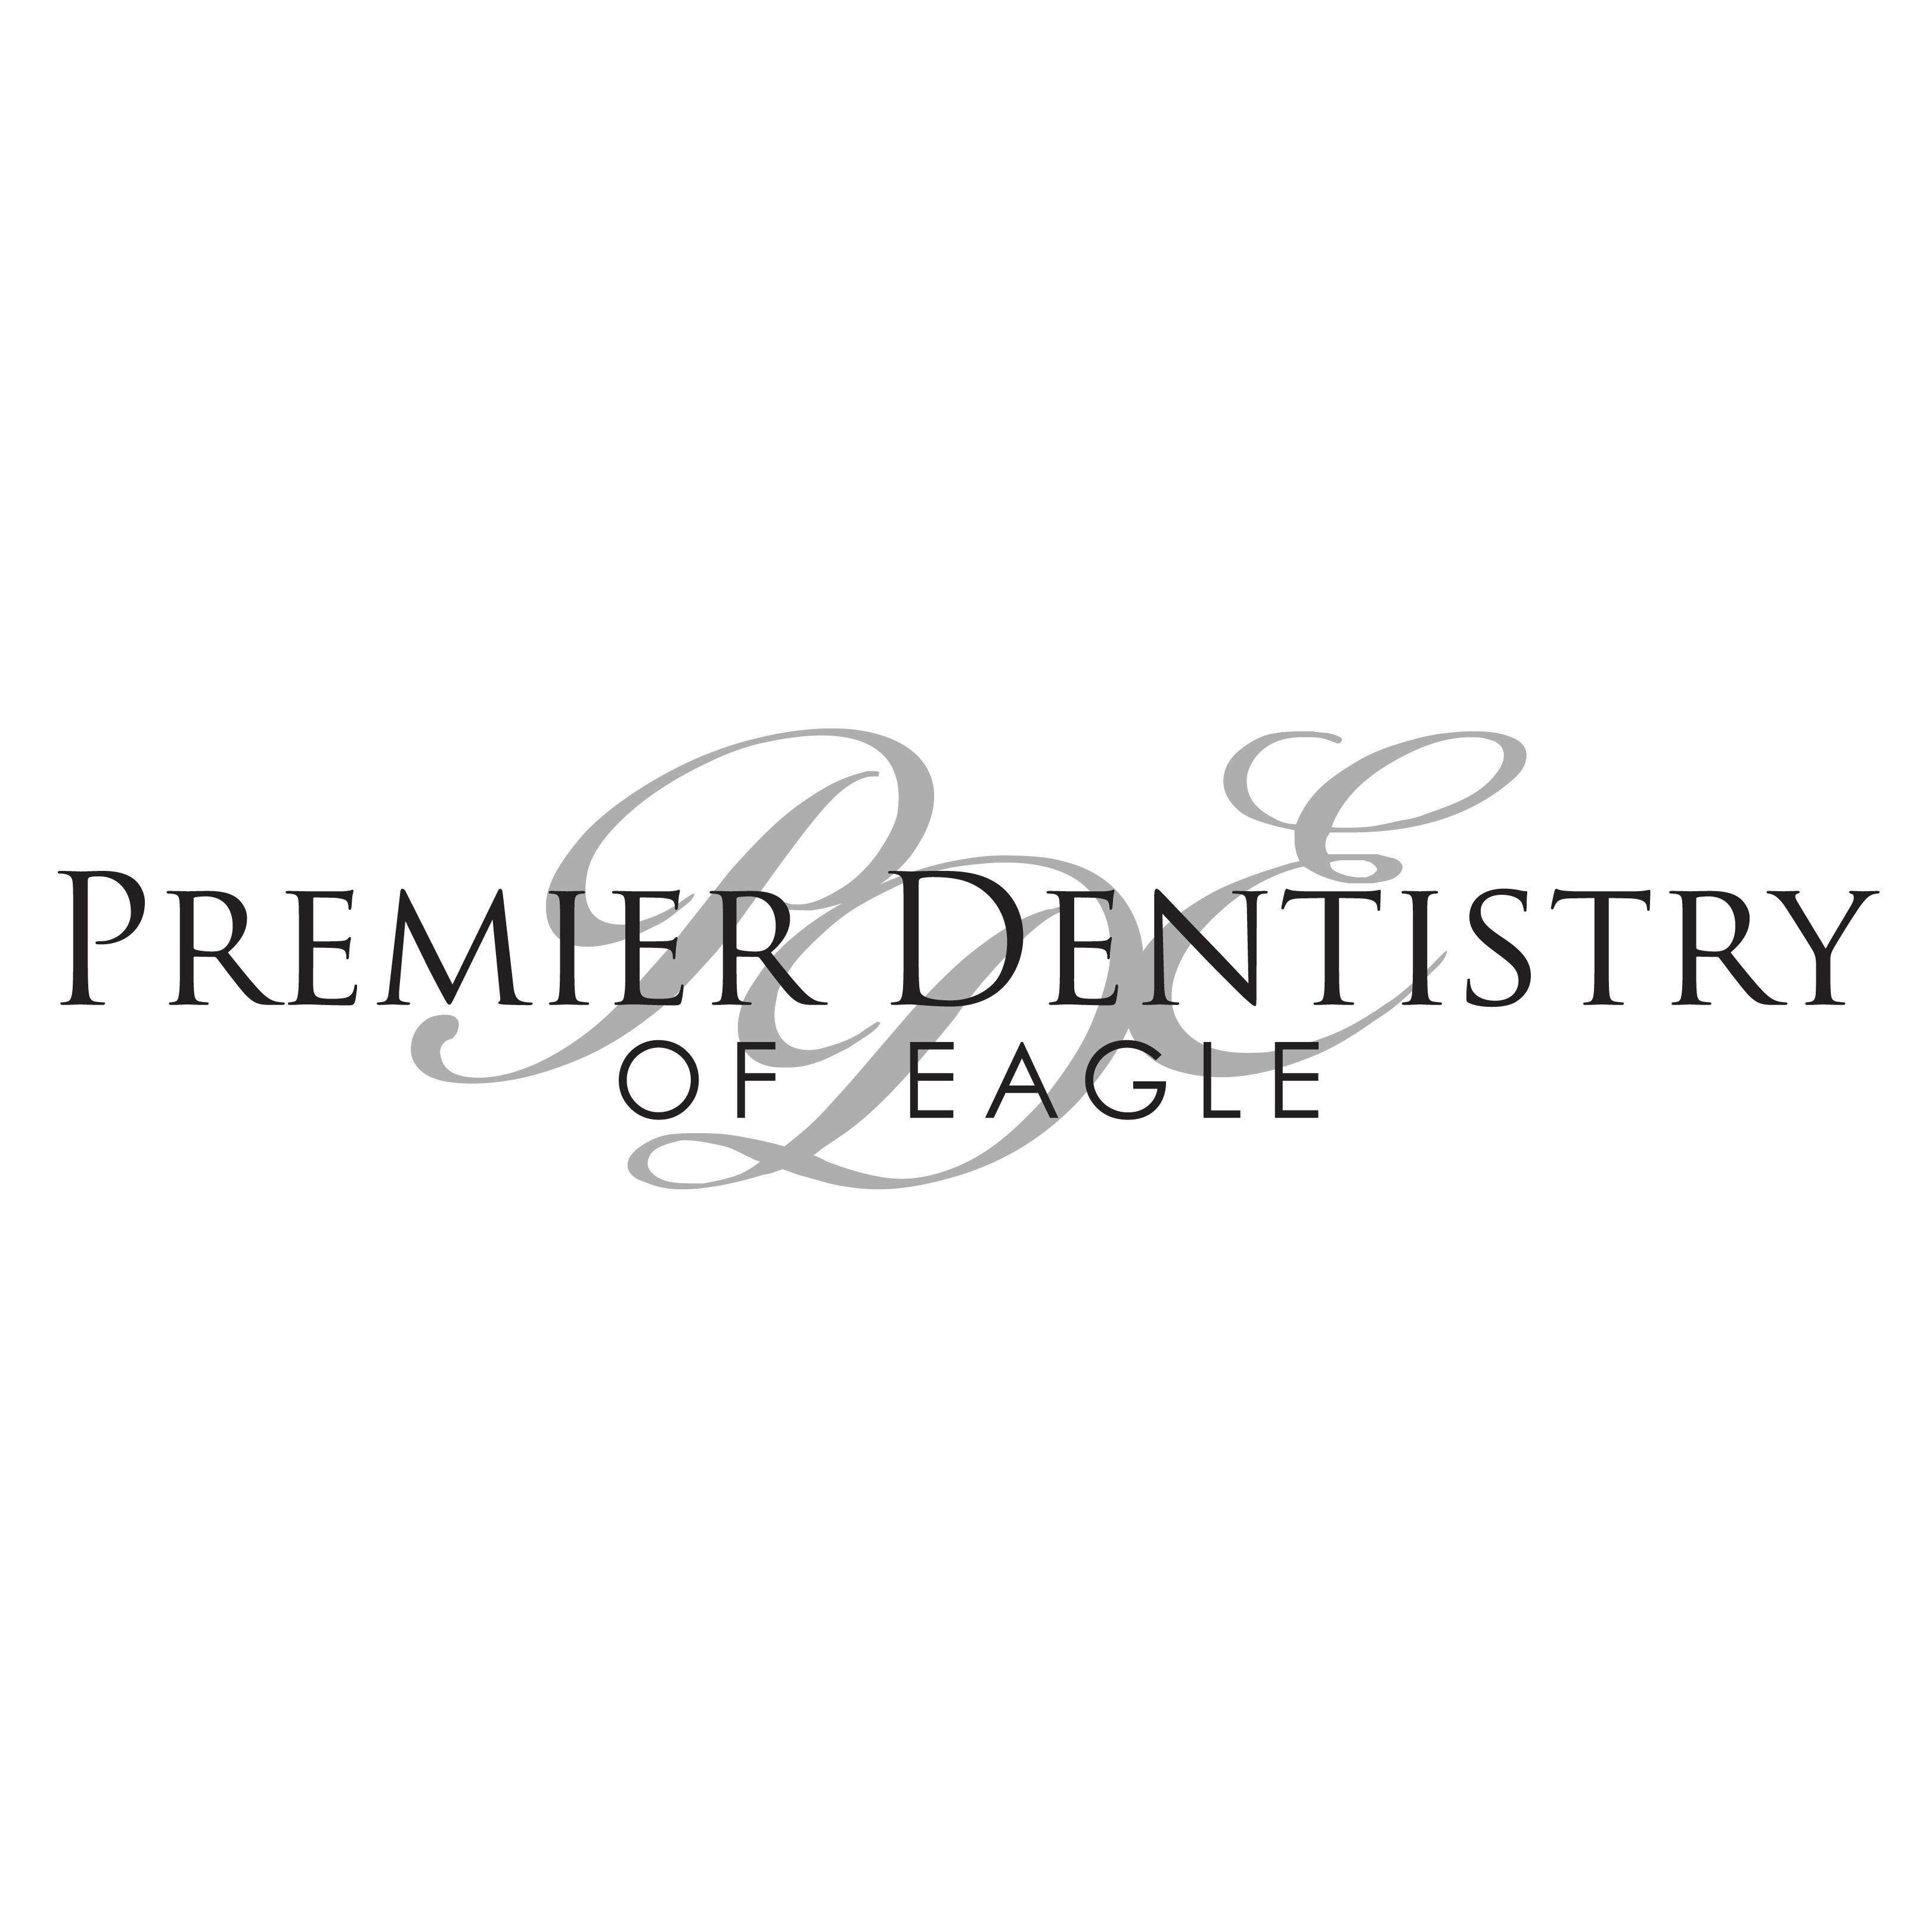 Premier Dentistry of Eagle - Shane S. Porter, DMD Logo